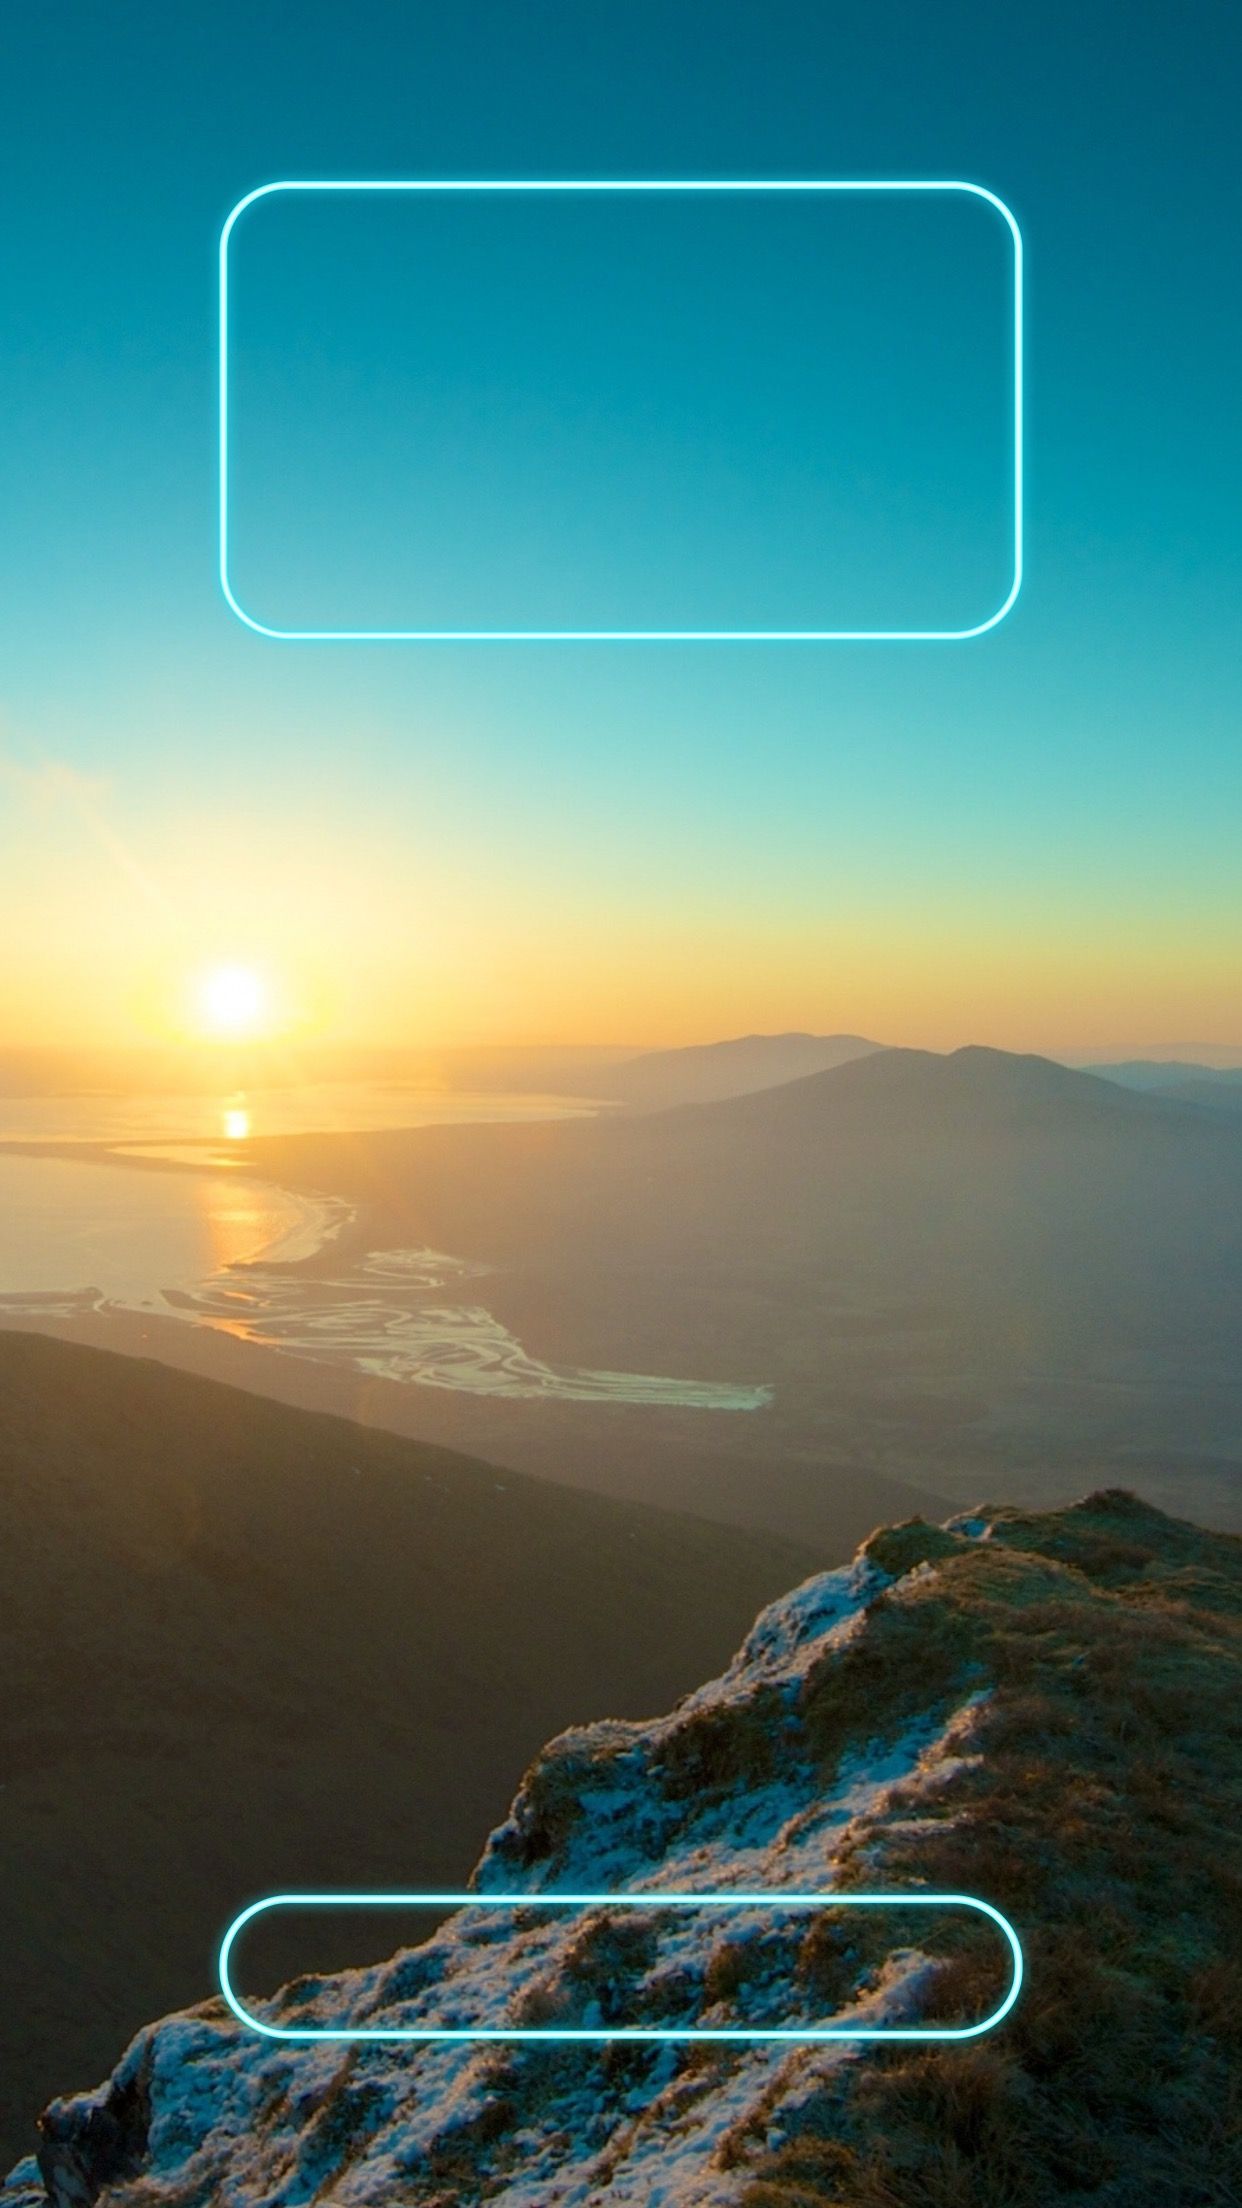 아이폰 6 플러스 잠금 화면 벽지,하늘,수평선,자연 경관,분위기,폰트